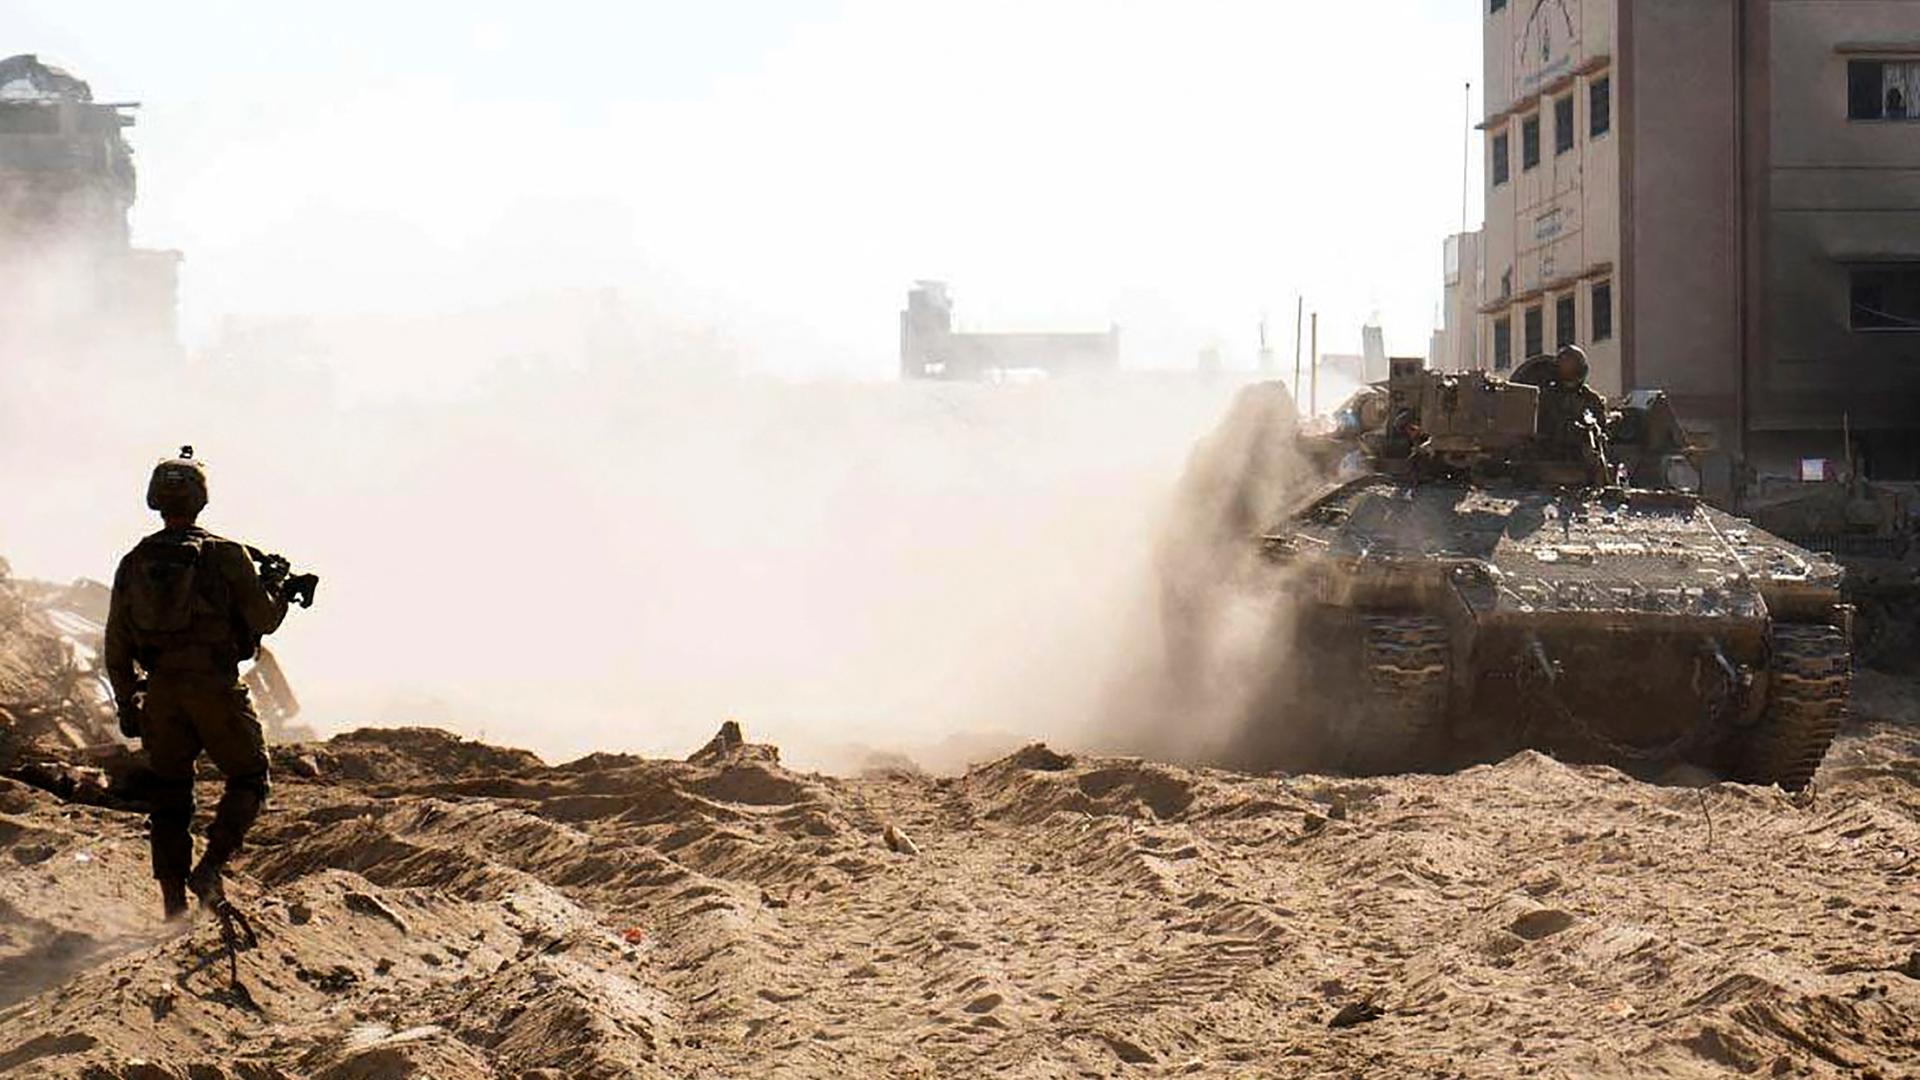 Euin israelischer Soldat läuft durch eine Trümmerlandschaft, über die dichter Rauch oder Staub zieht. Man sieht ihn als Silhouette von hinten.